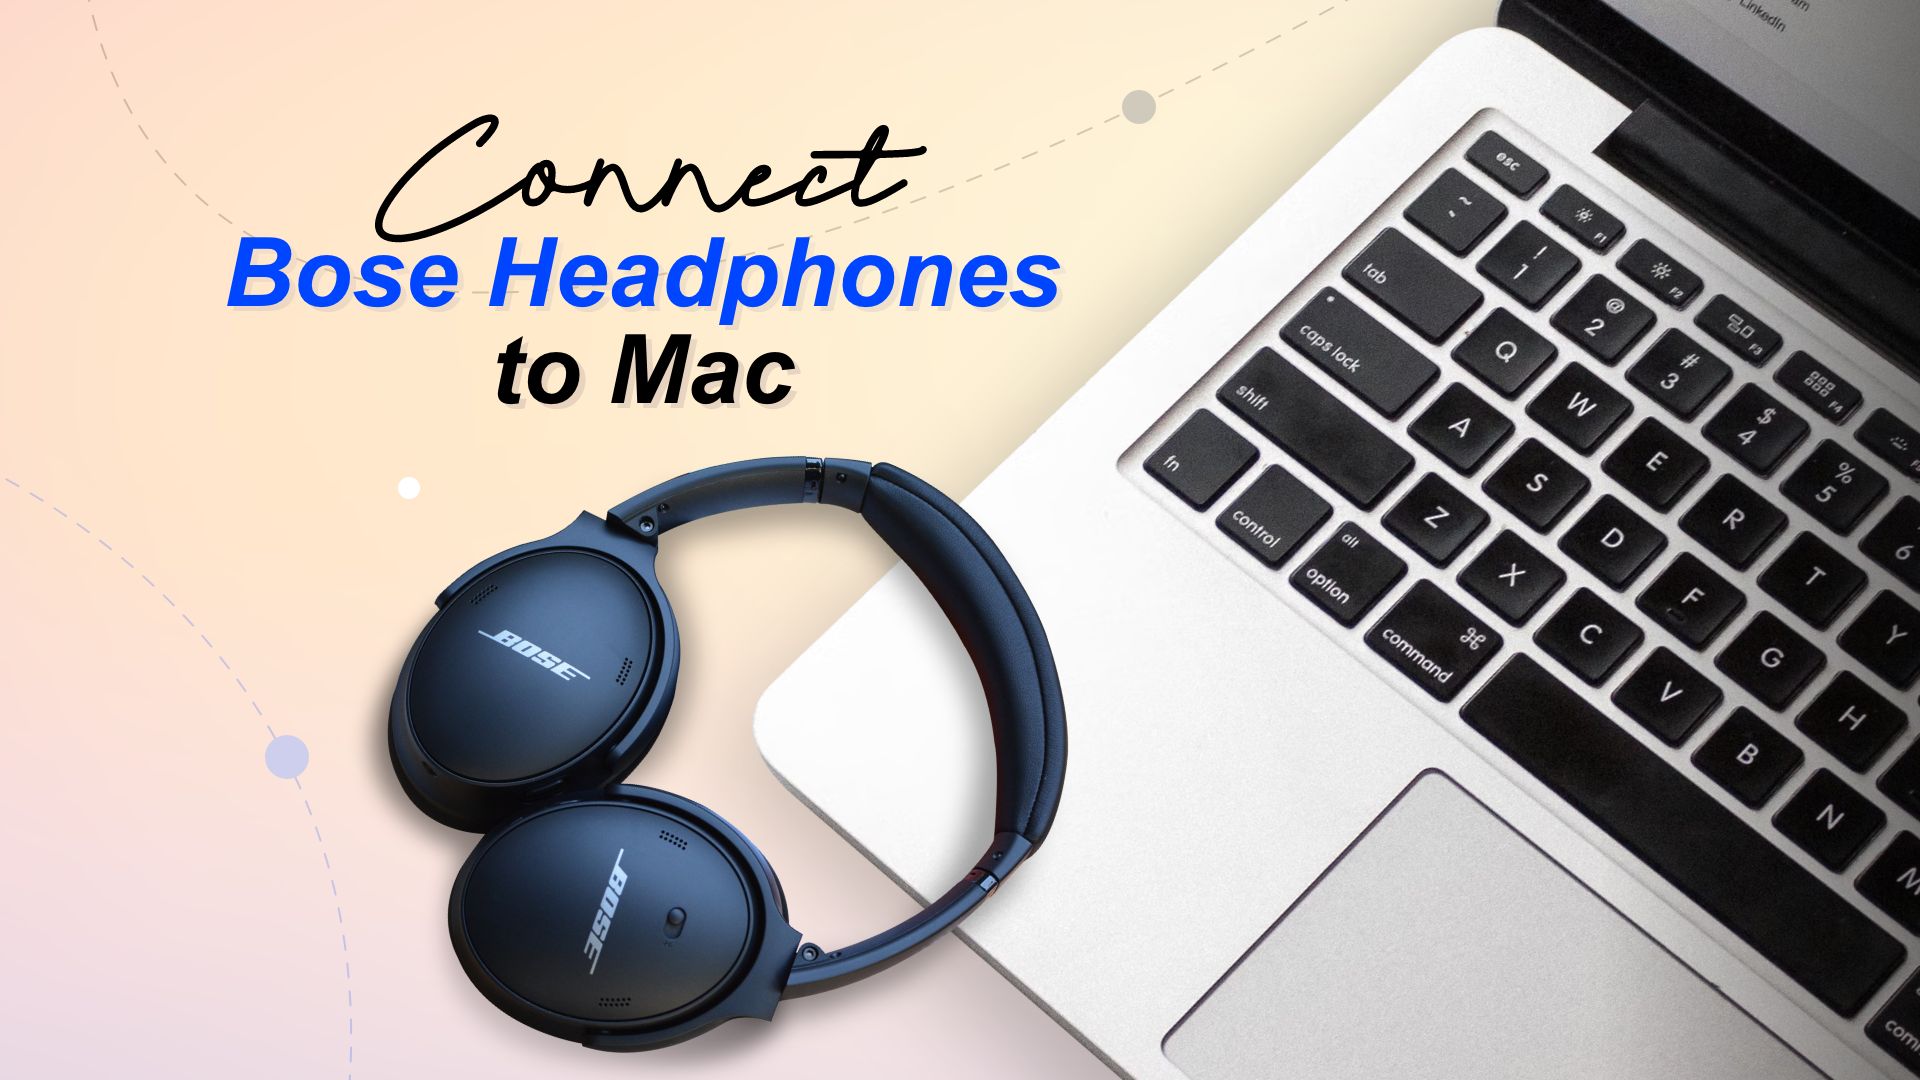 Bloedbad Heerlijk Post How to Connect Bose Headphones to Mac - Techtouchy